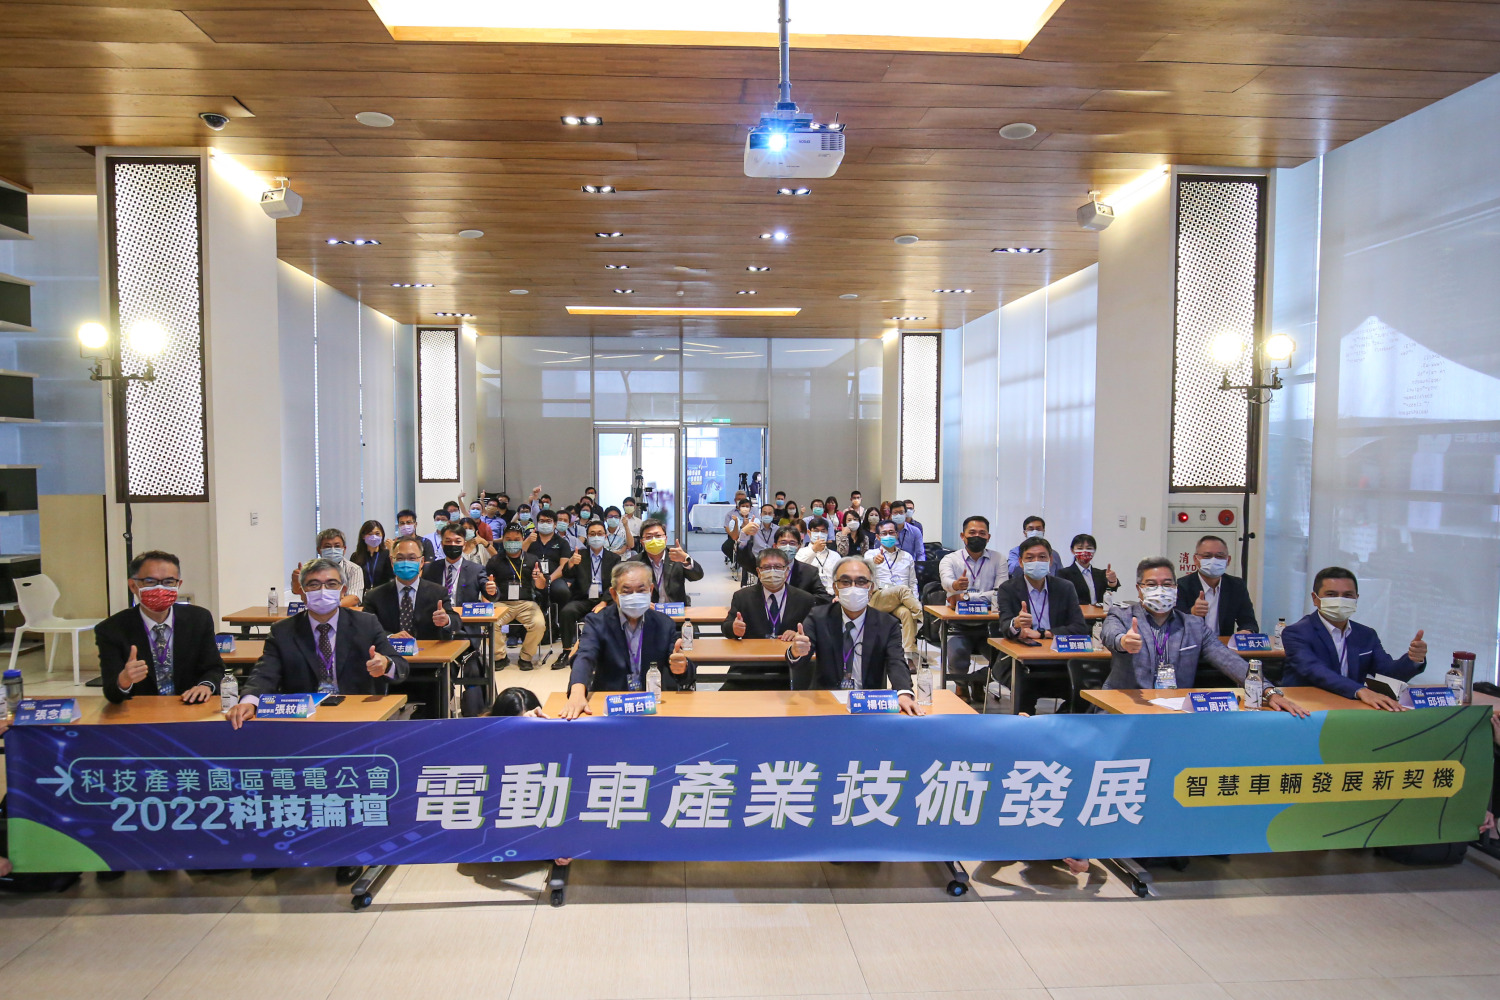 台灣科技產業園區電電公會舉辦2022科技論壇